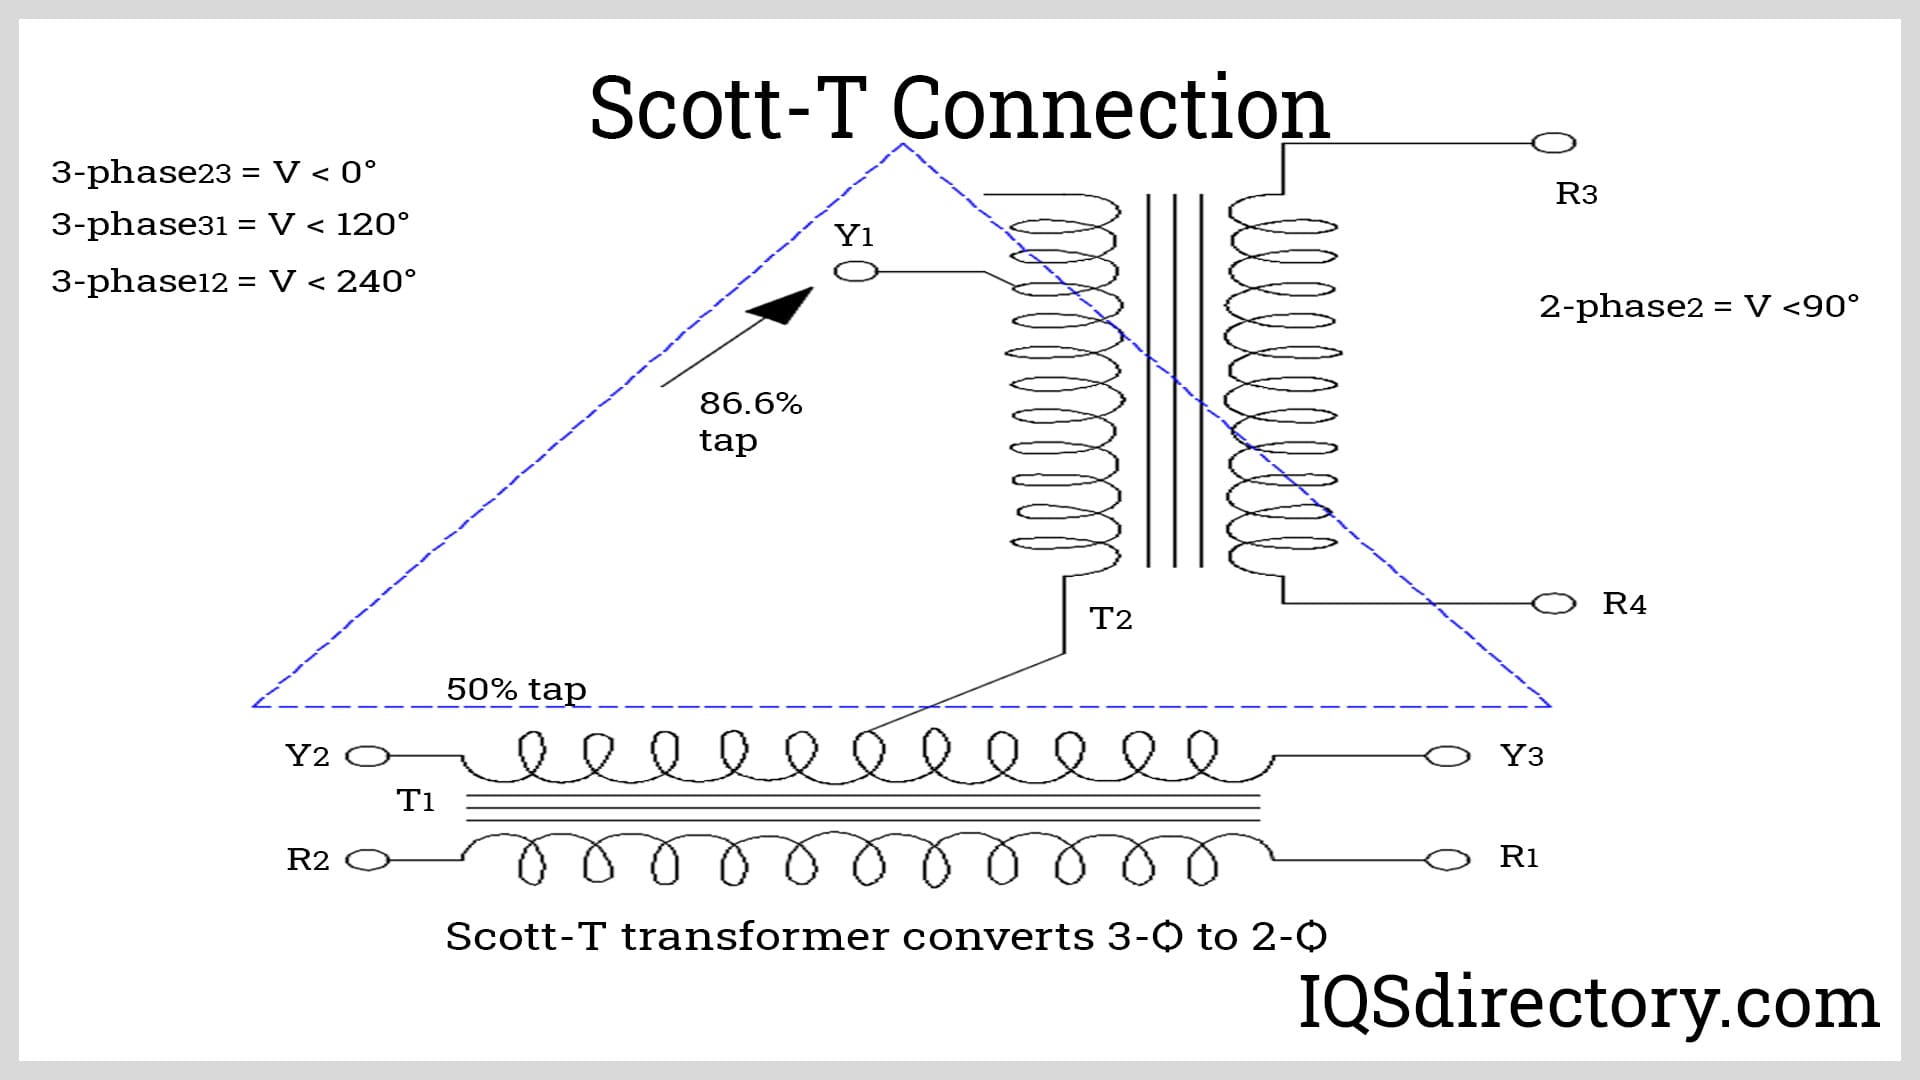 Scott-T Connection